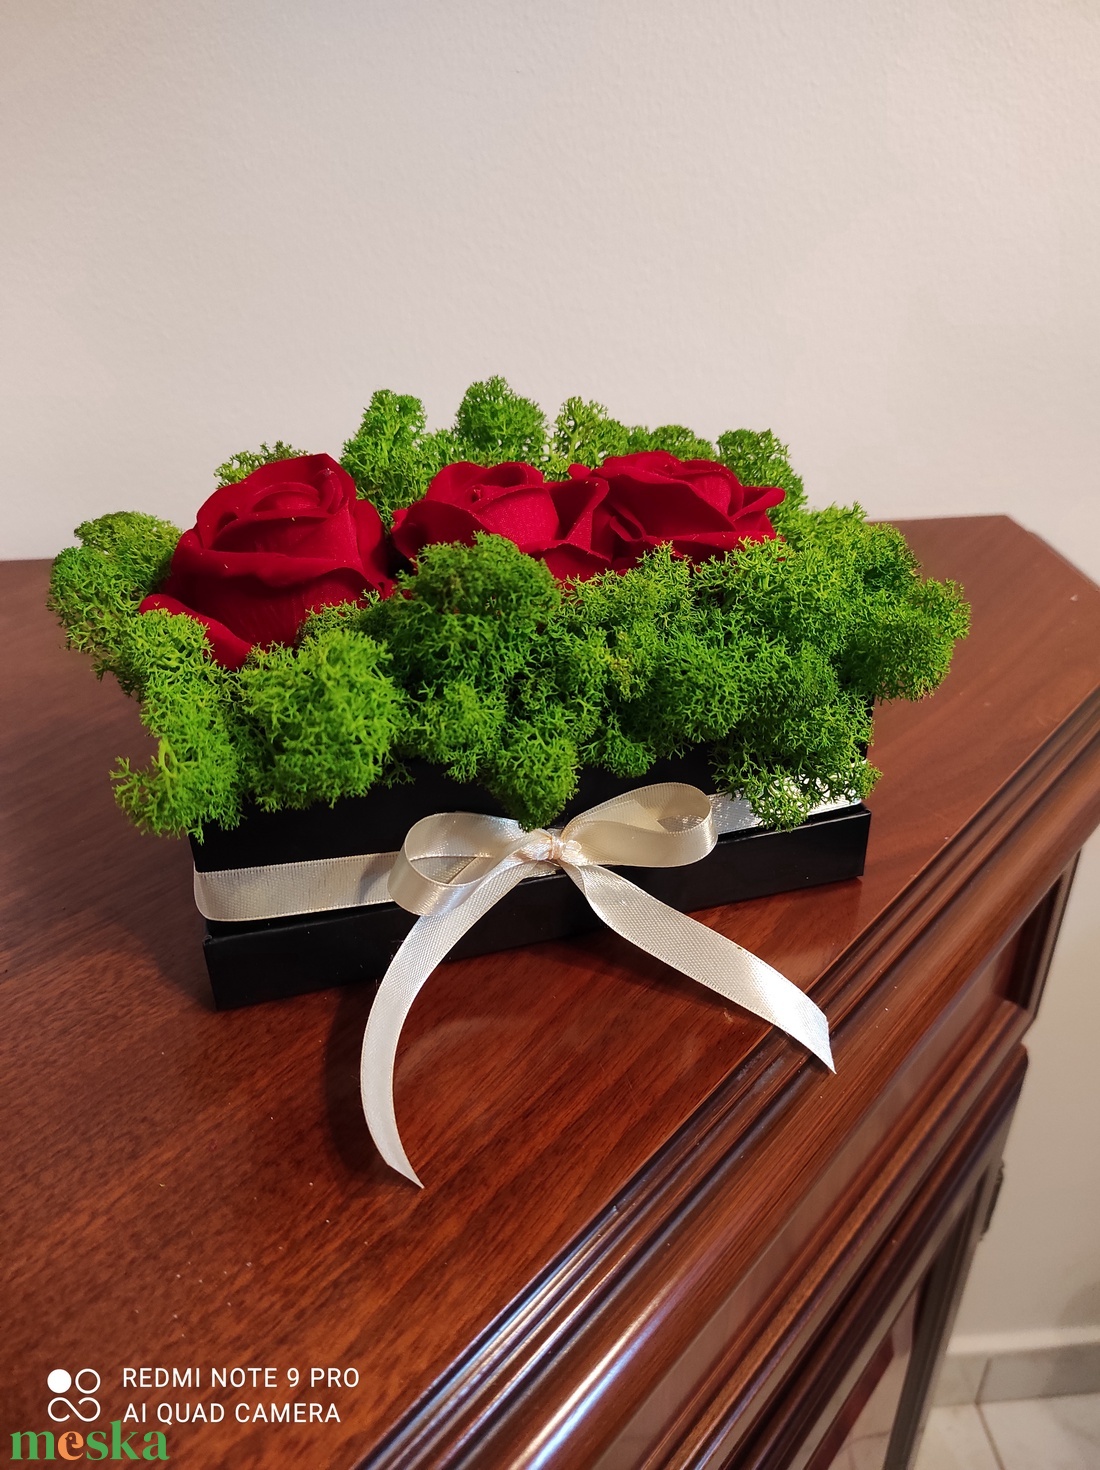 Fekete zuzmóbox 3 vörös rózsával - esküvő - emlék & ajándék - szülőköszöntő ajándék - Meska.hu